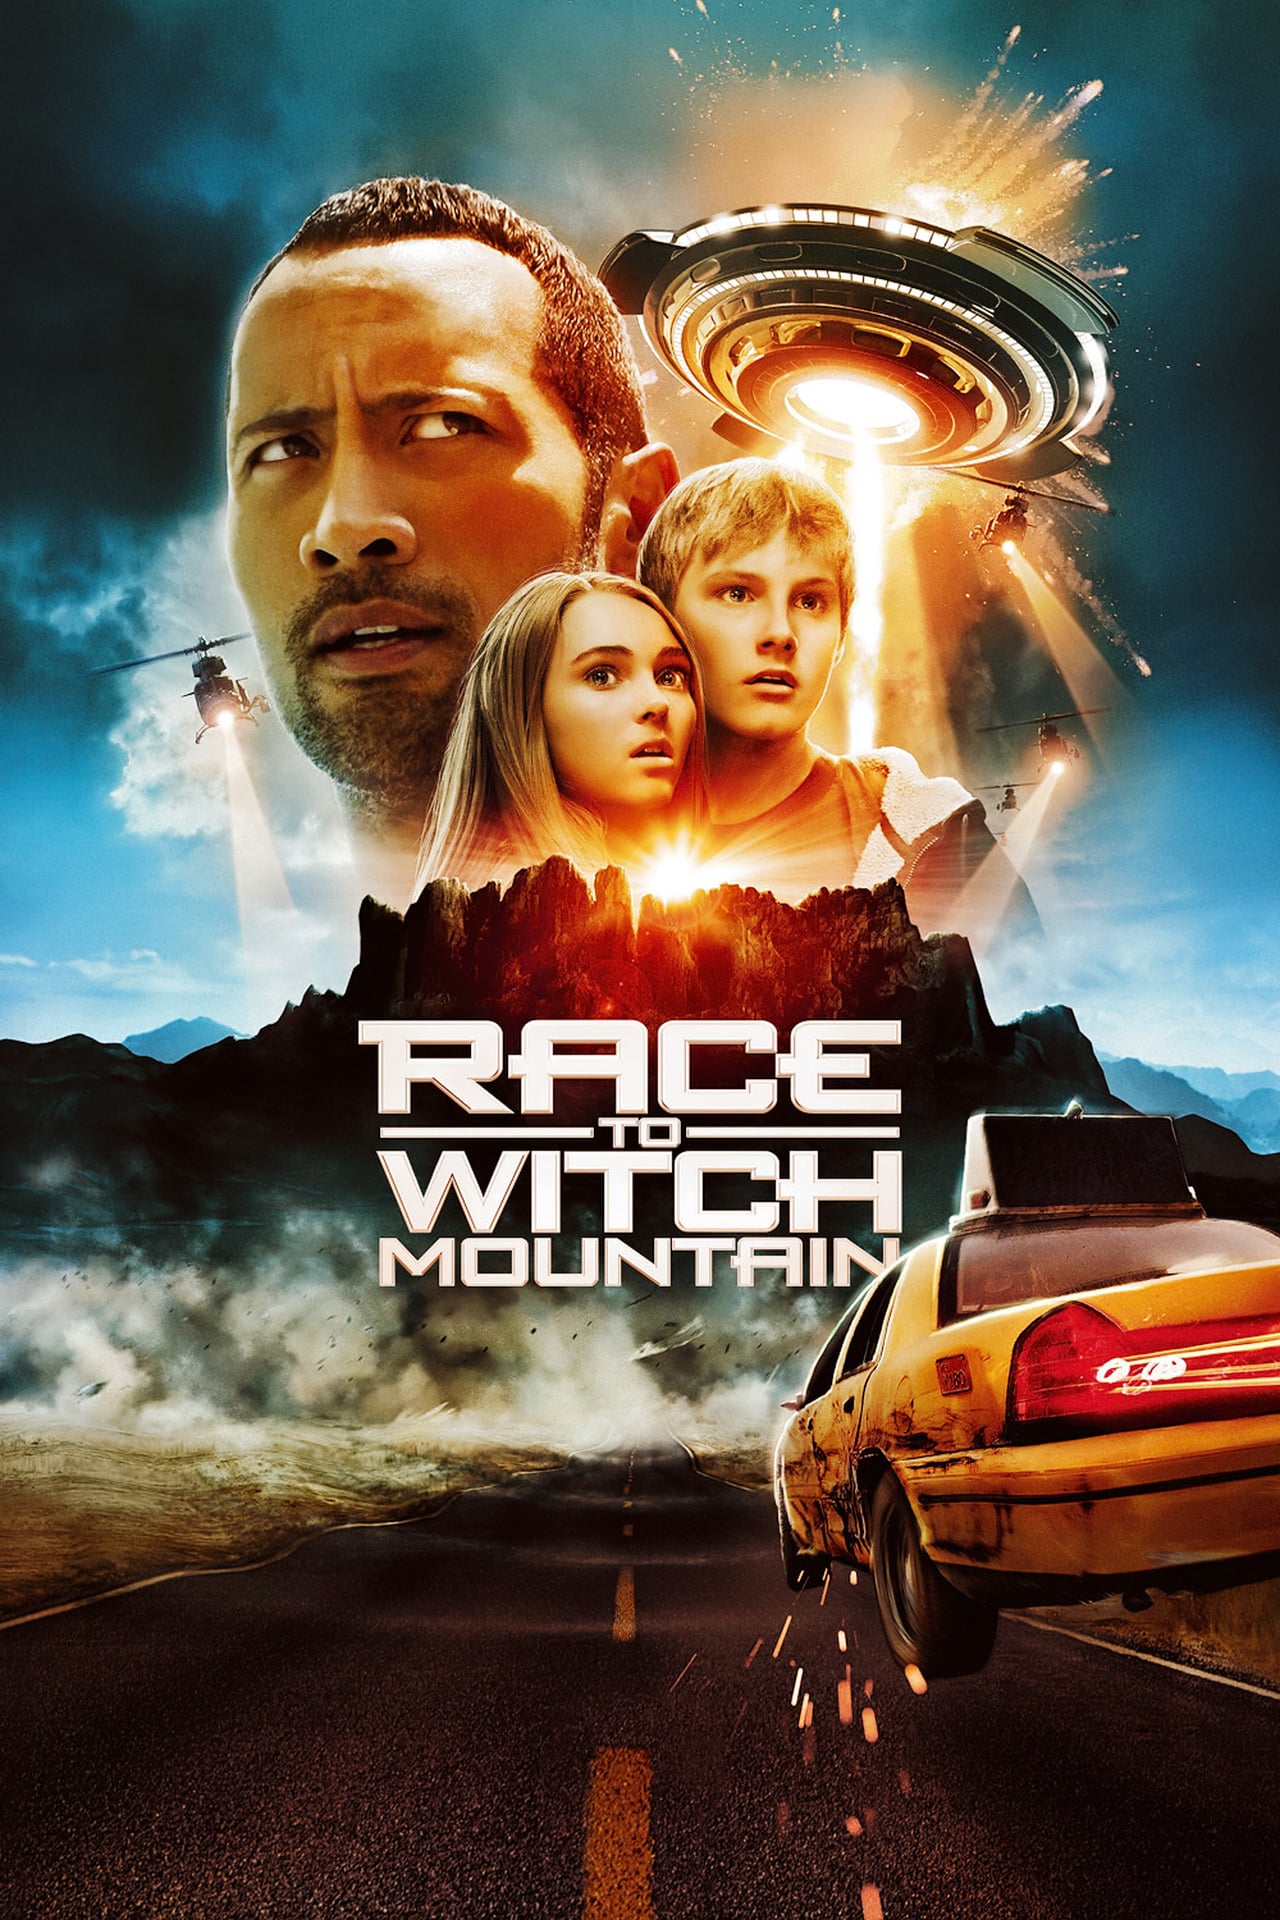 Rat race movie torrent download